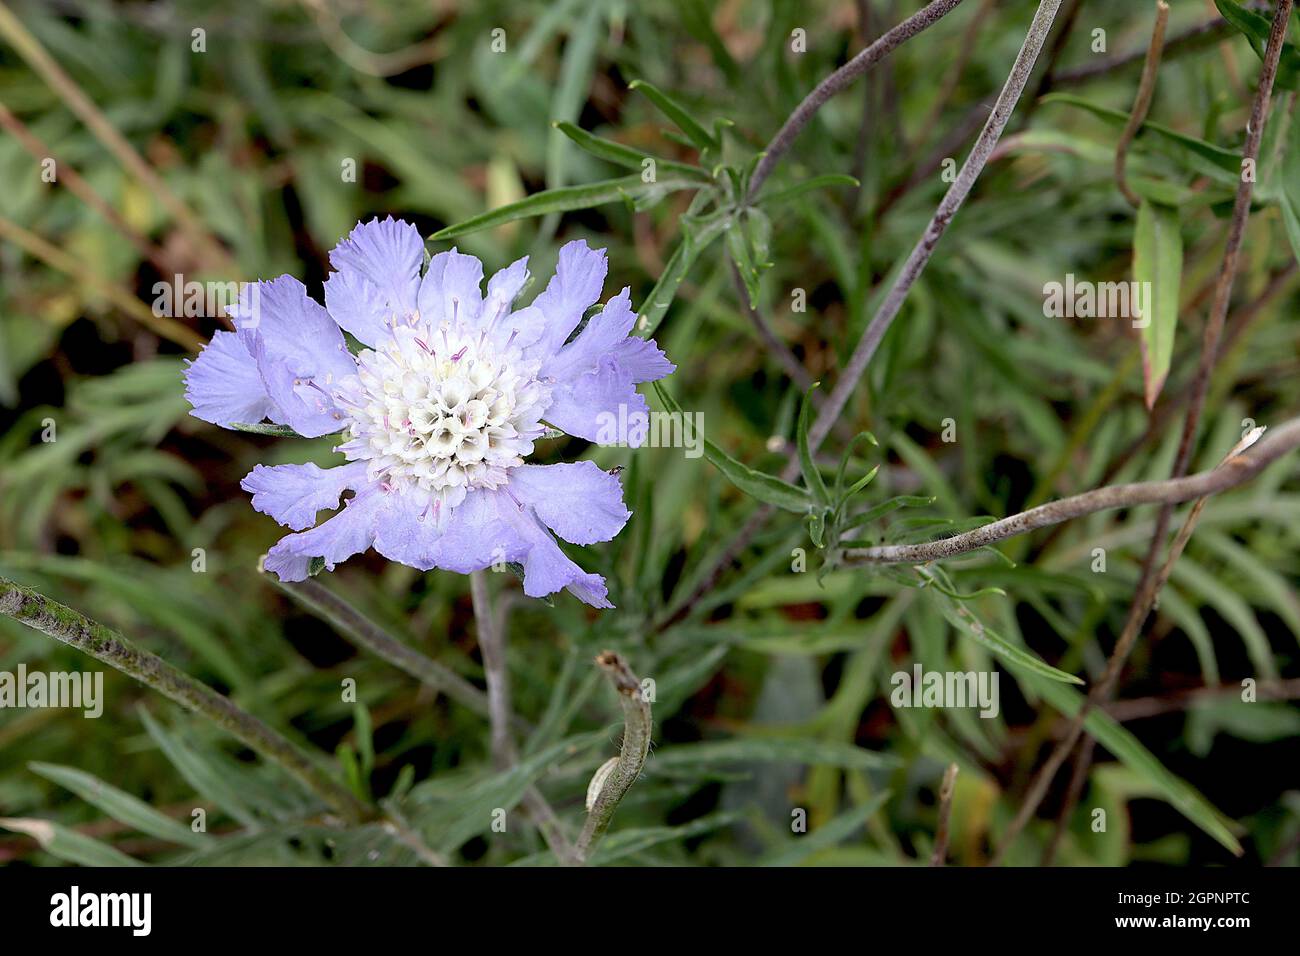 Scabiosa Cretica Cretan scabious - pétales externes bleu mauve avec des marges frangées et des fleurs tubulaires intérieures blanches, septembre, Angleterre, Royaume-Uni Banque D'Images